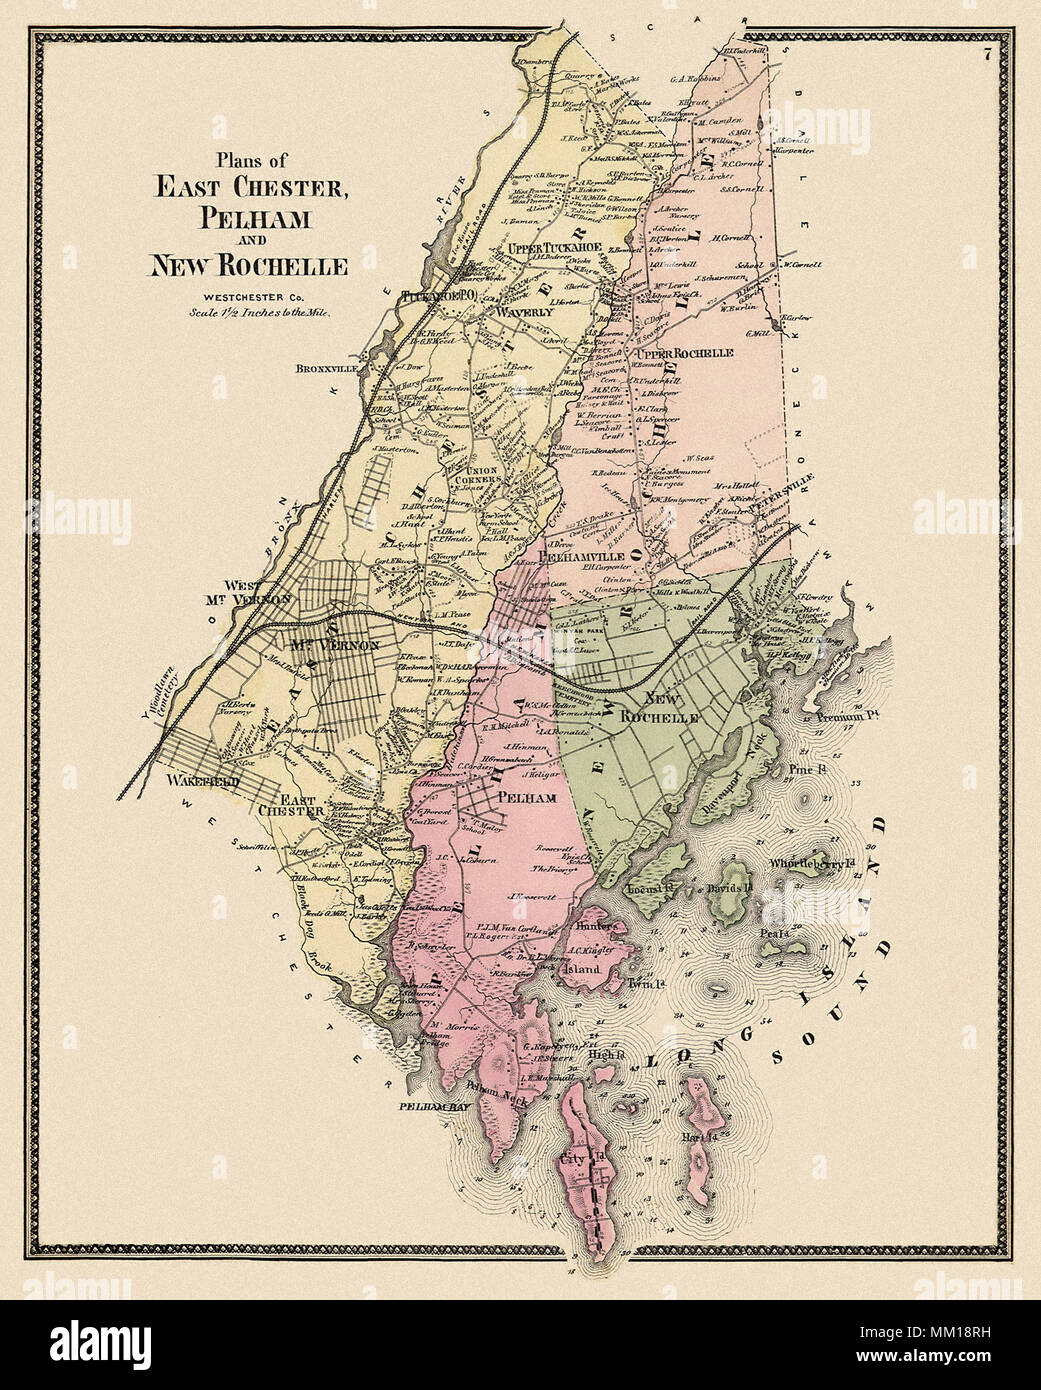 Maps of East Chester, Pelham, & New Rochelle. 1867 Stock Photo